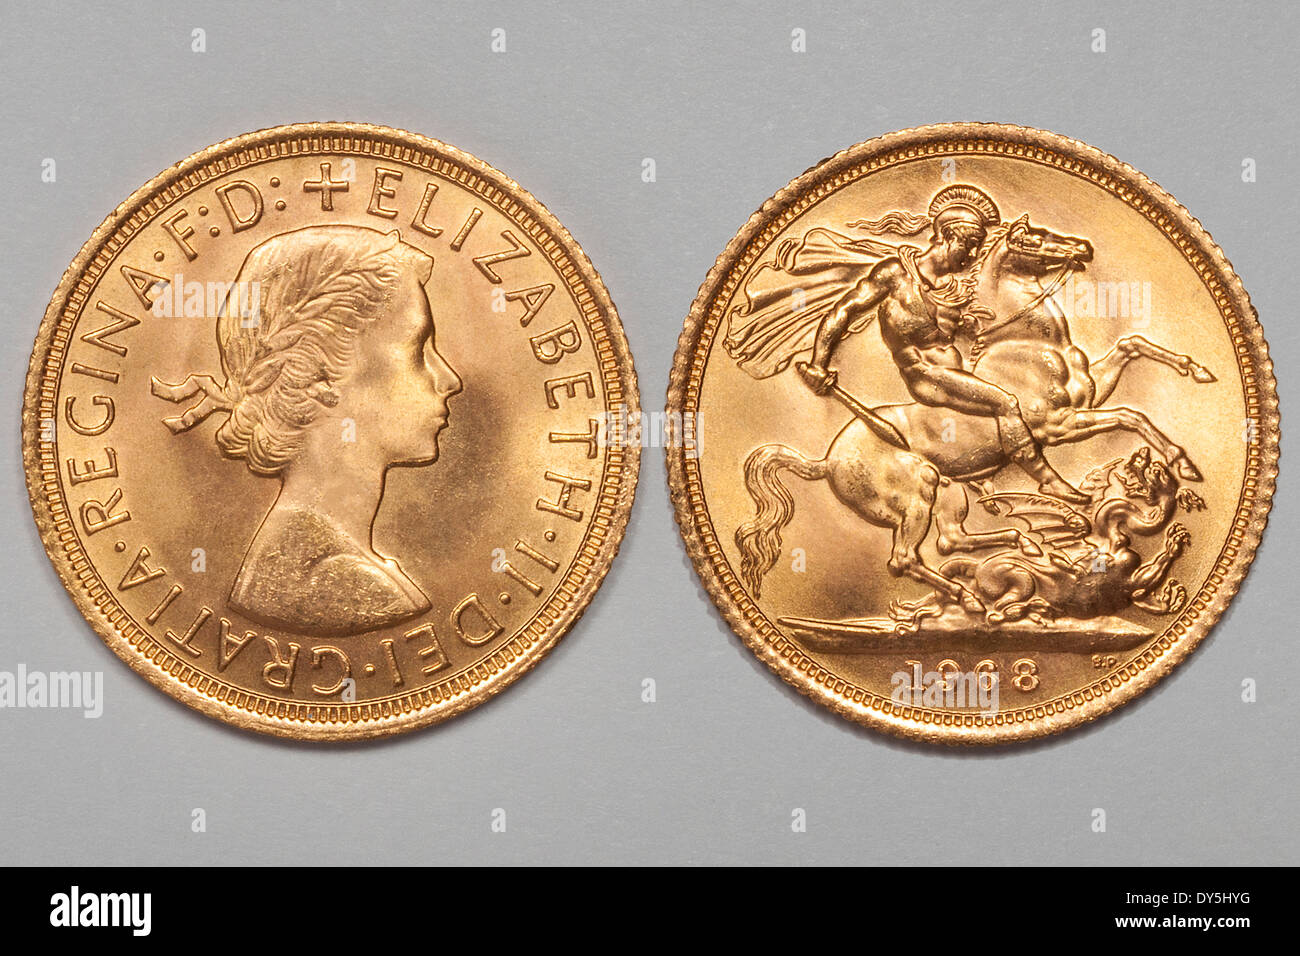 Sovereign Goldmünze des Vereinigten Königreichs mit Königin Elizabeth II. und Hl. Georg tötet den Drachen datiert 1968. JMH6120 Stockfoto